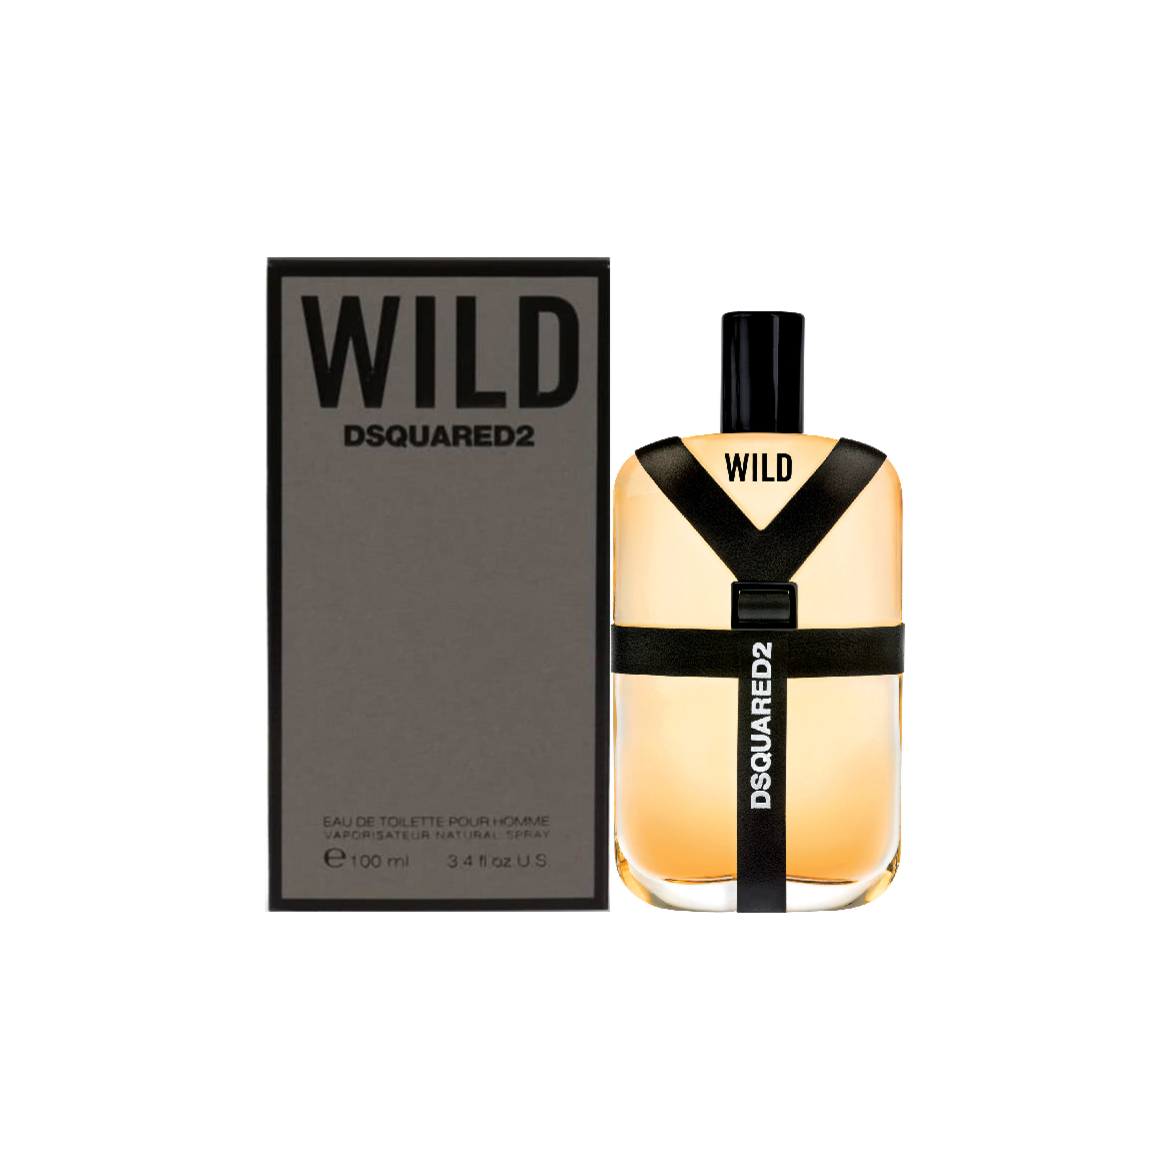 wild dsquared2 parfum